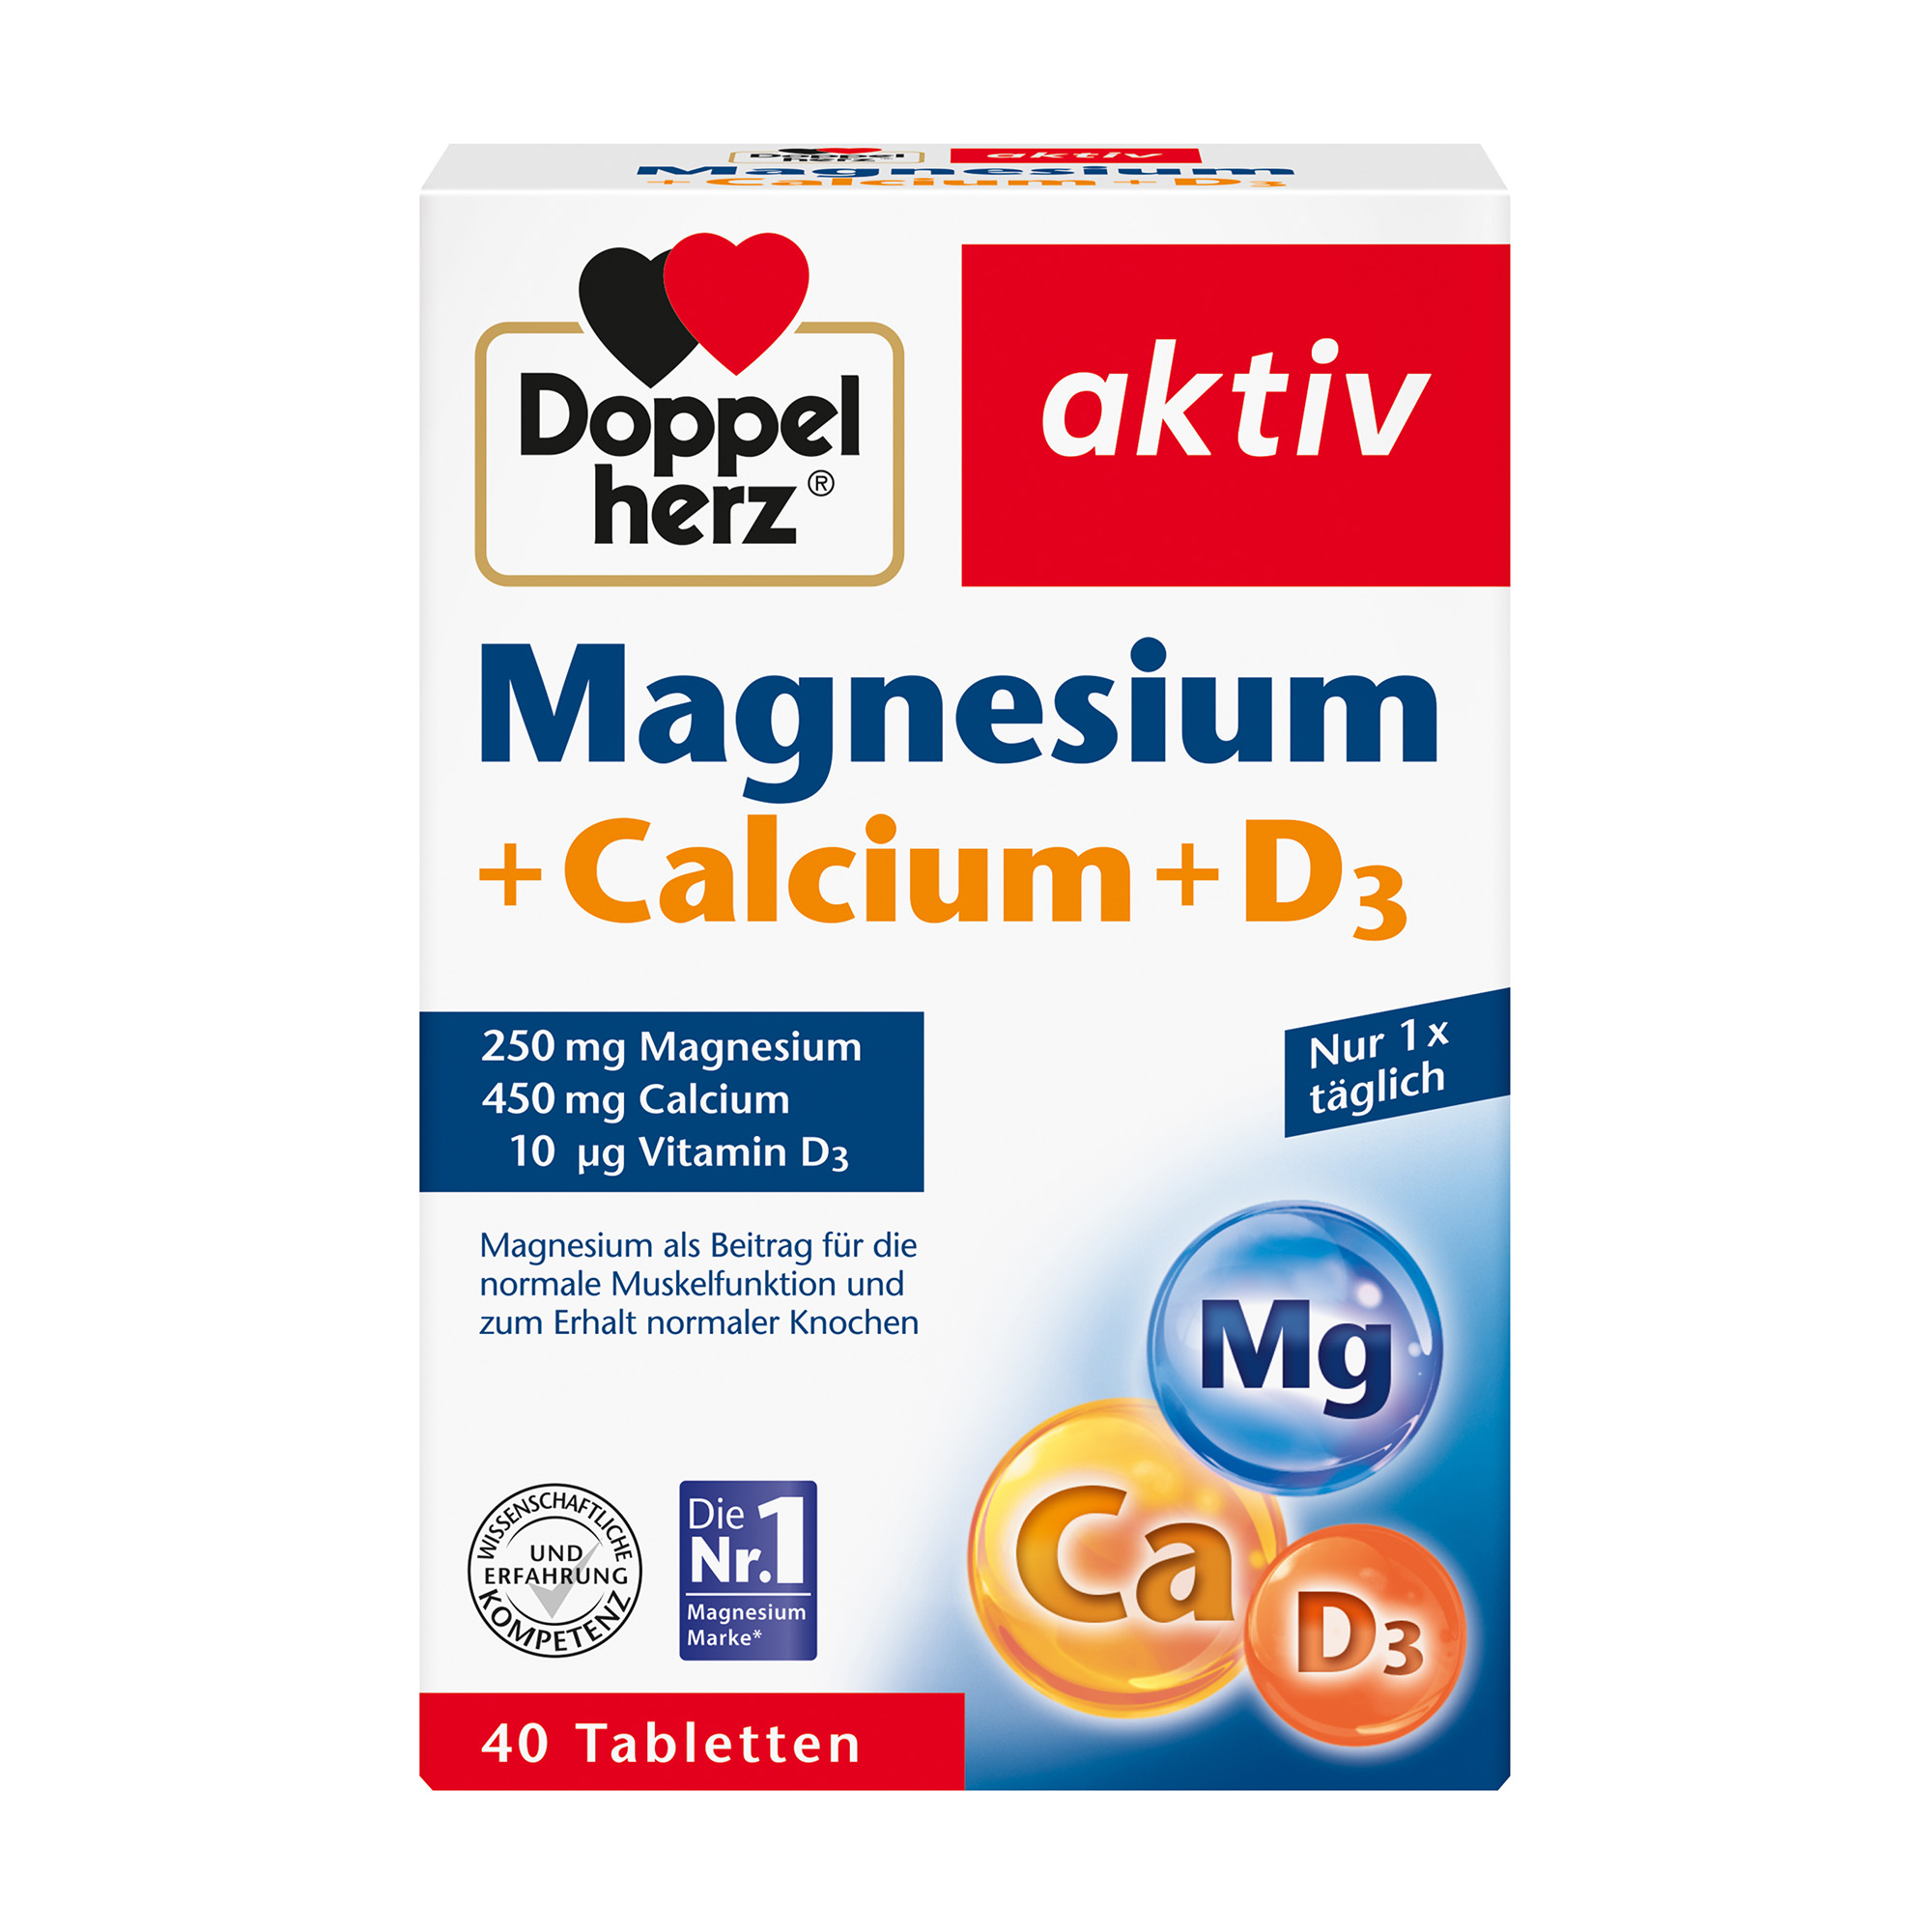 Doppelherz aktiv Magnesium + Calcium + Vitamin D3, 40 Tabletten